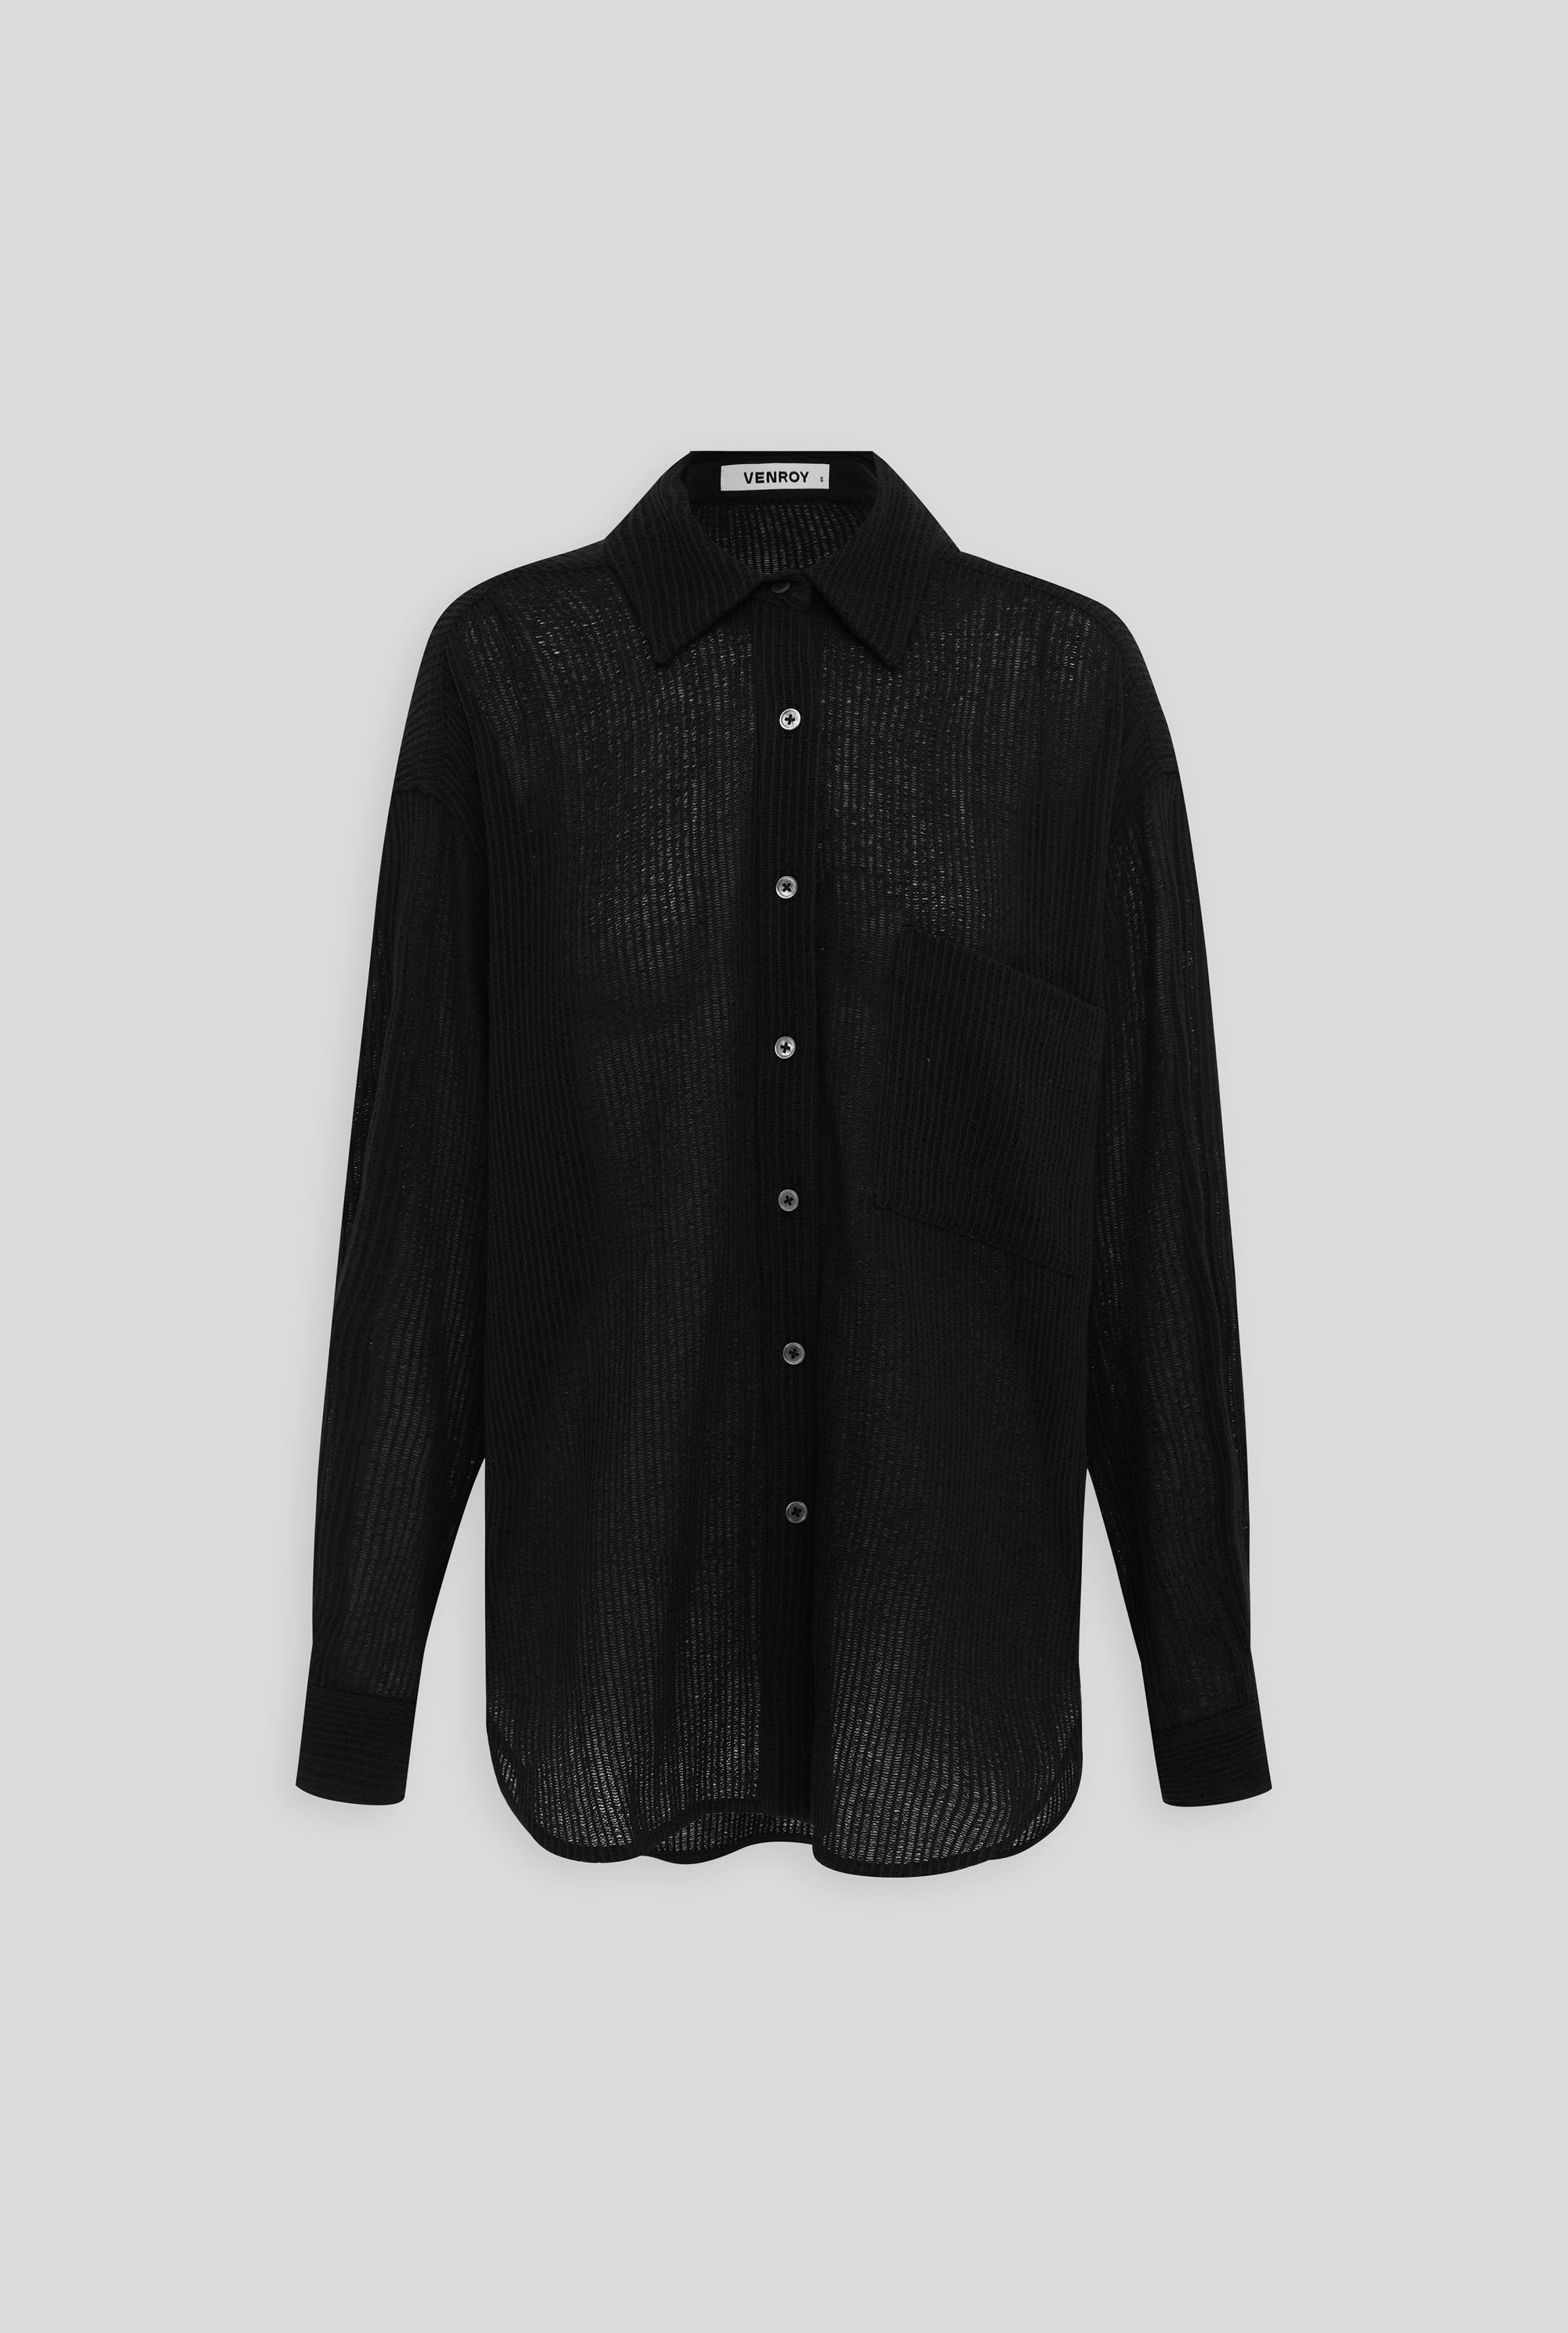 Venroy - Womens Oversized Open Weave Shirt in Black | Venroy | Premium ...